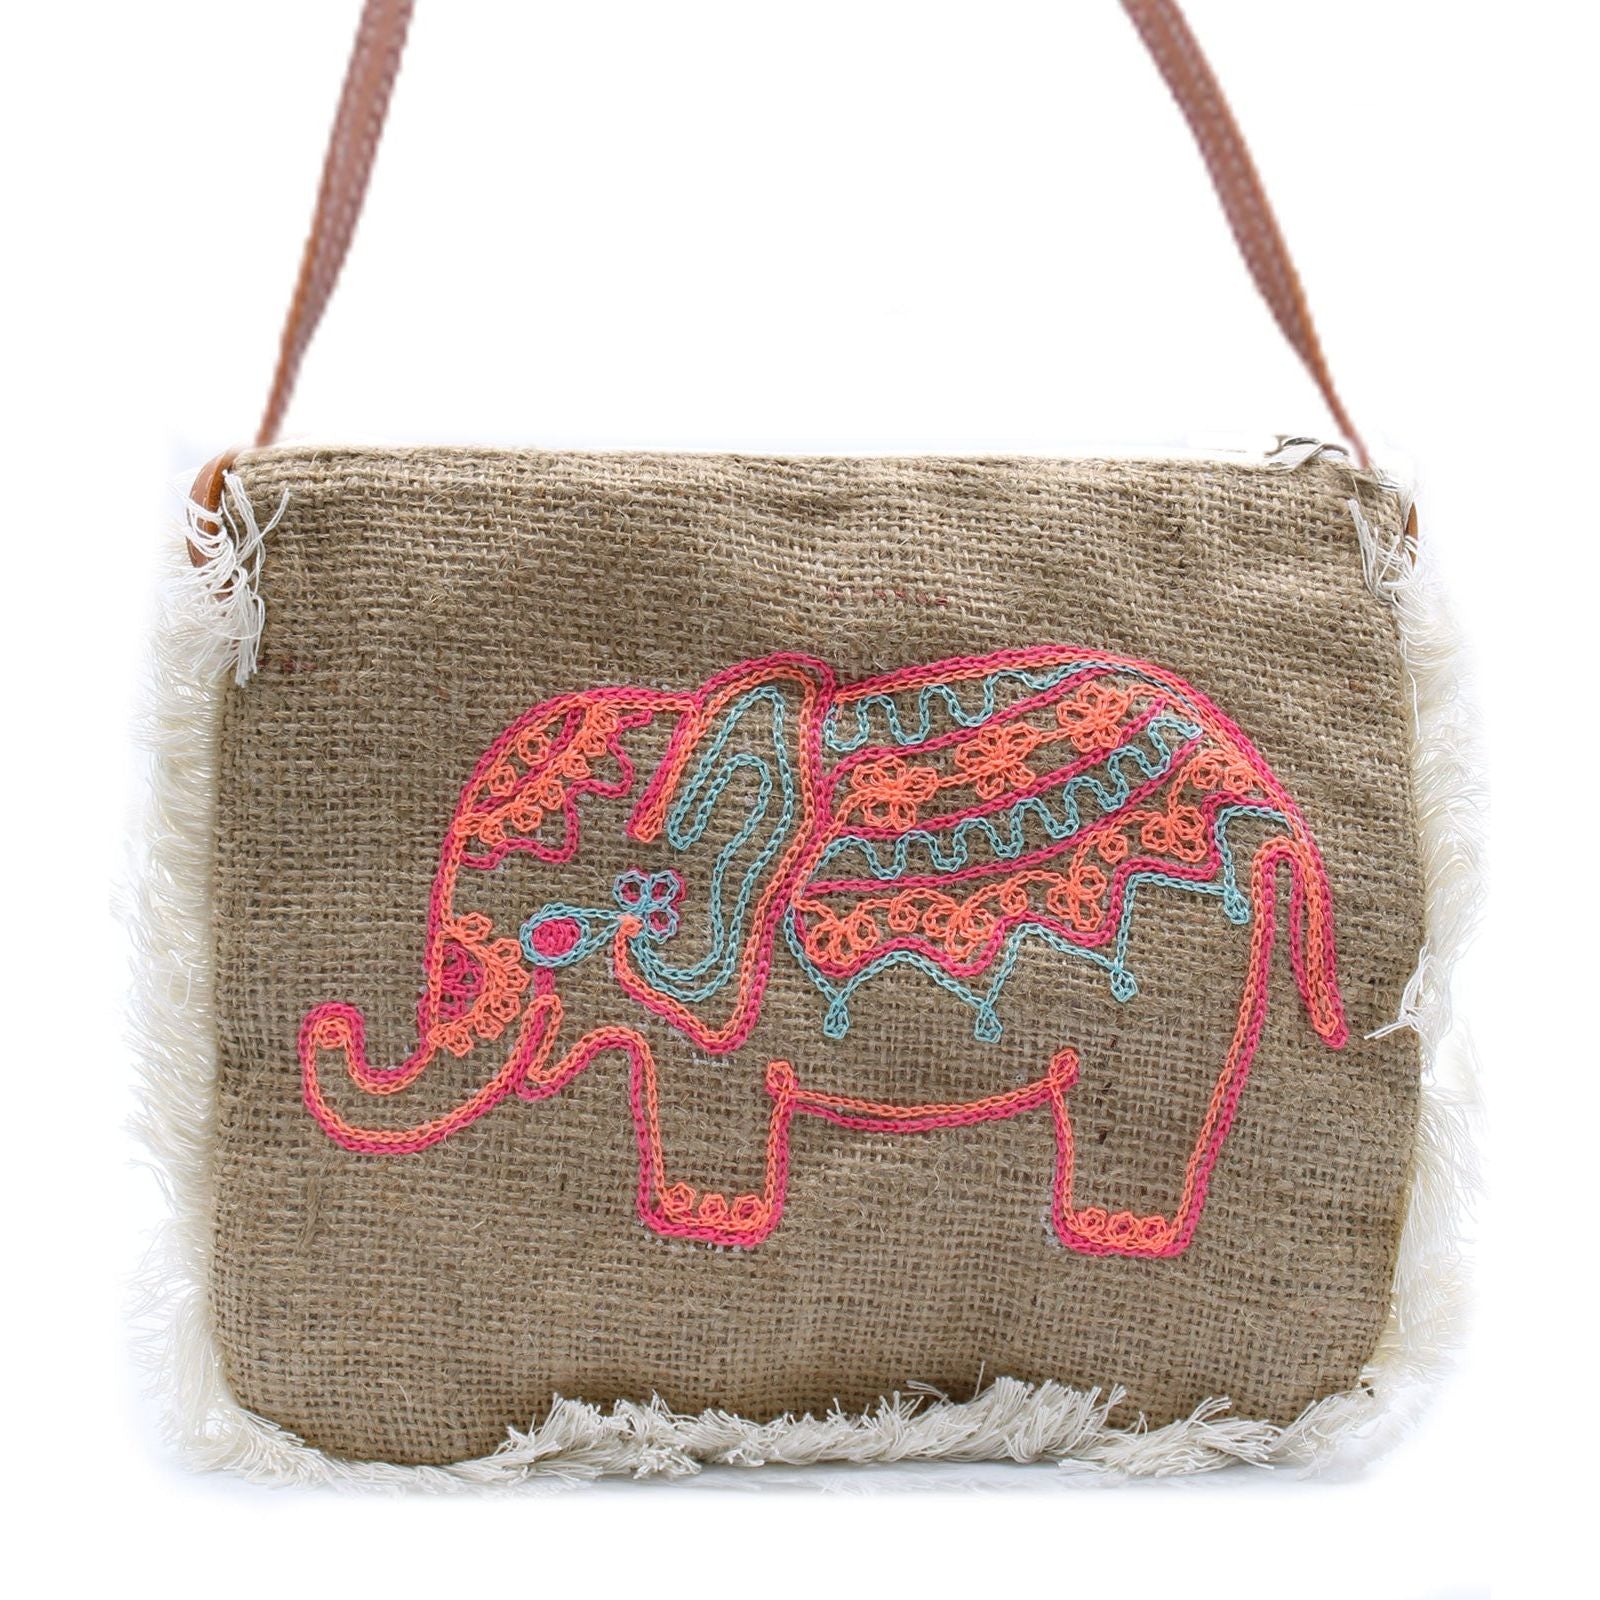 Fab Fringe Bag - Elephant Embroidery - Ashton and Finch